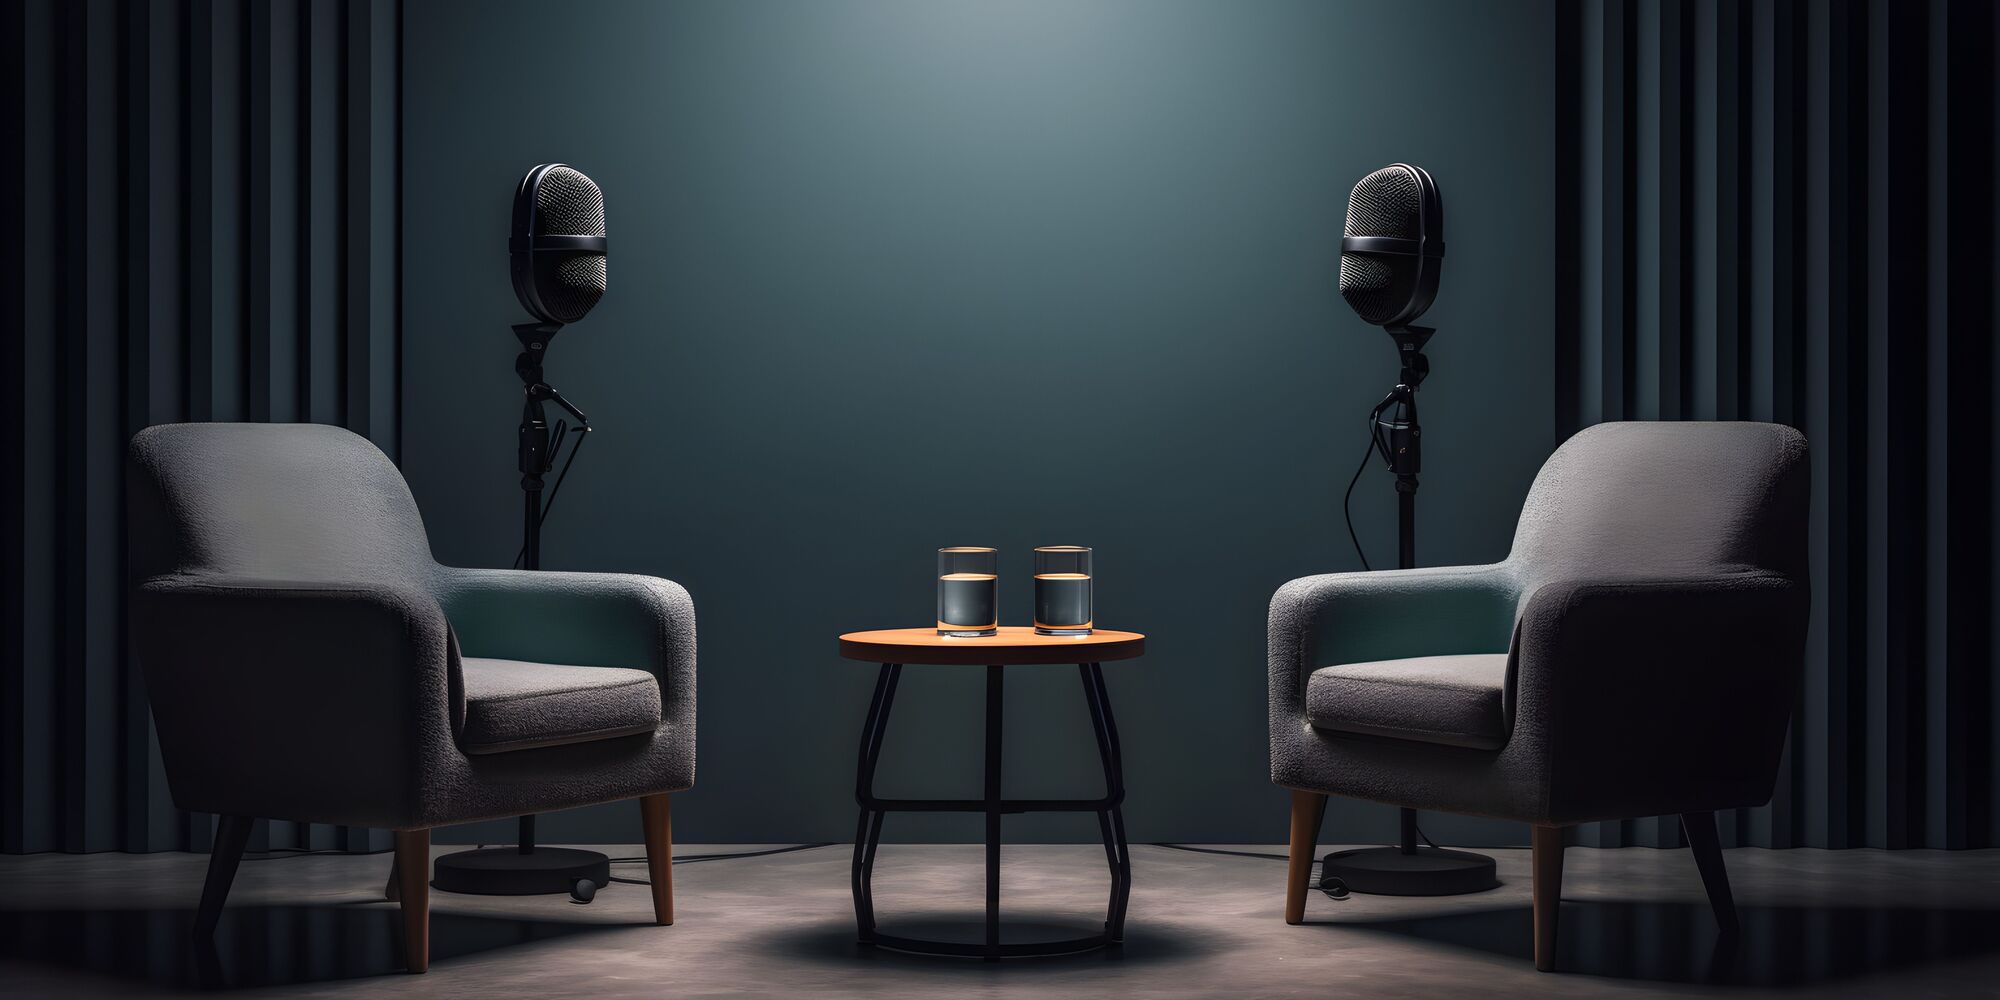 Warum eigen sich Fach-Podcasts als Werbeträger im B2B? | Haufe Group